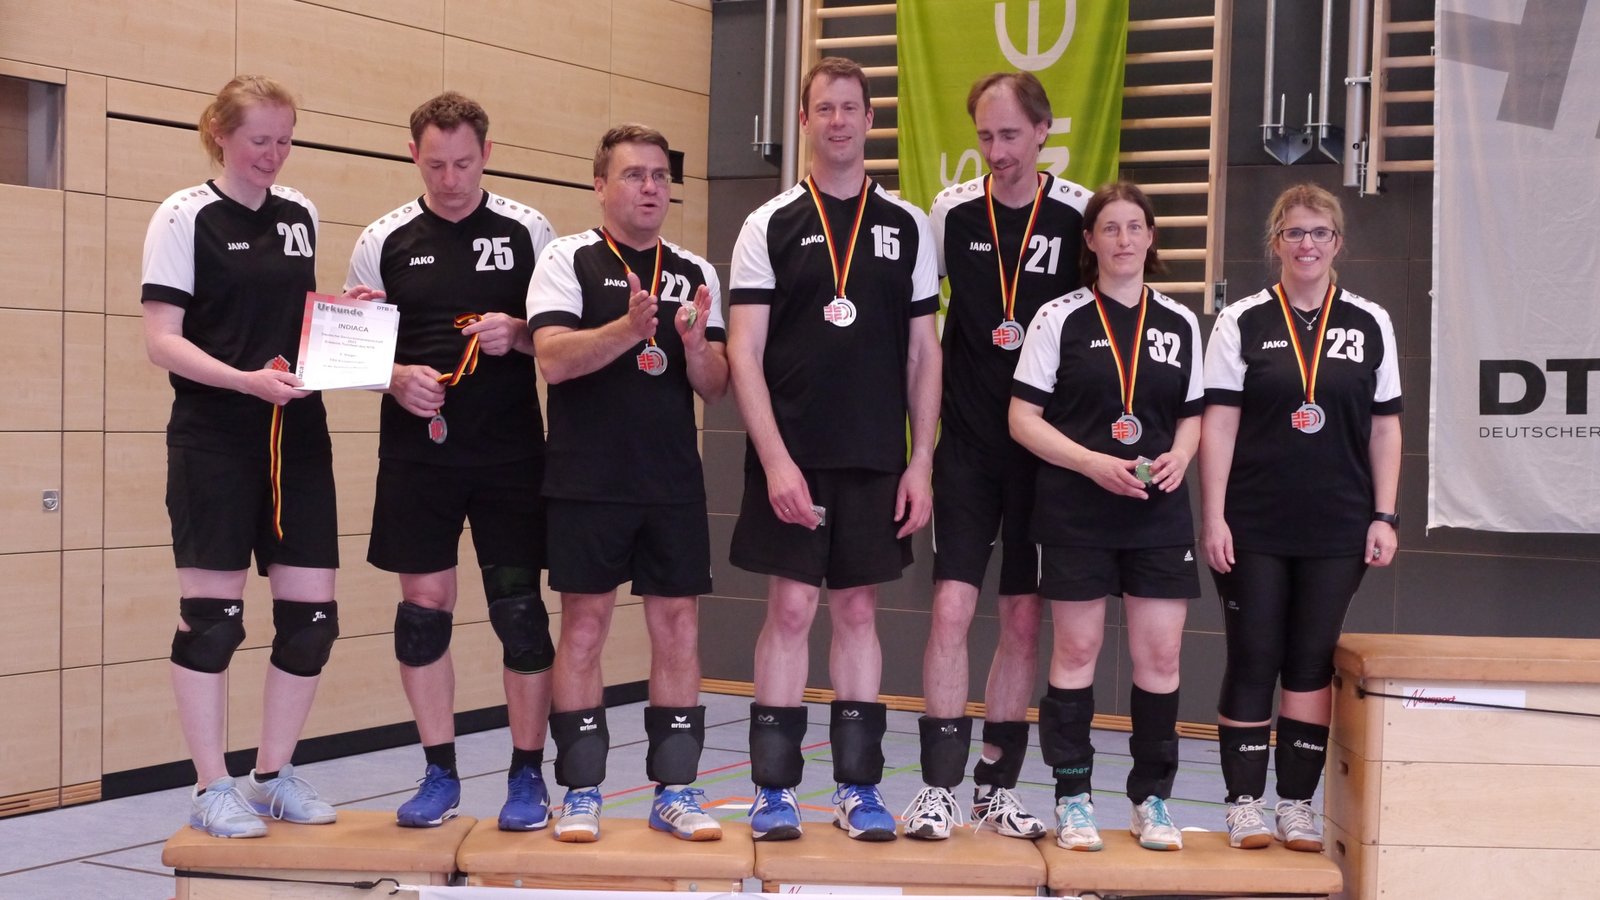 Das Mixed-Team des TSV Enzweihingen gewinnt bei der deutschen Seniorenmeisterschaft im Indiaca die Silbermedaille. Foto: privat